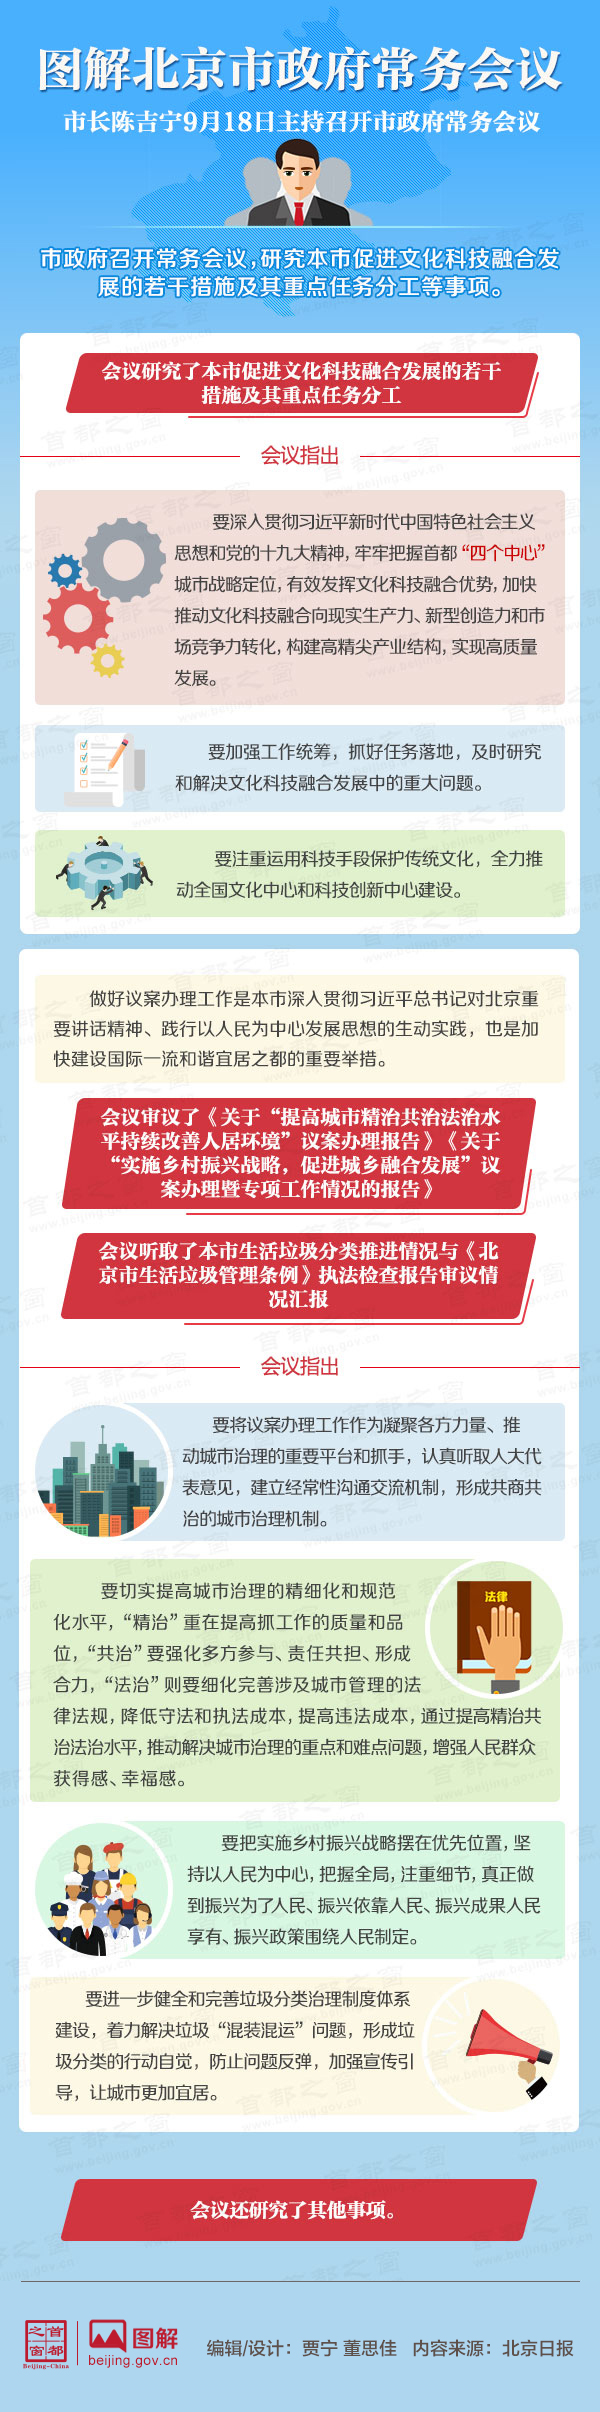 圖解2018年9月18日北京市政府常務會議